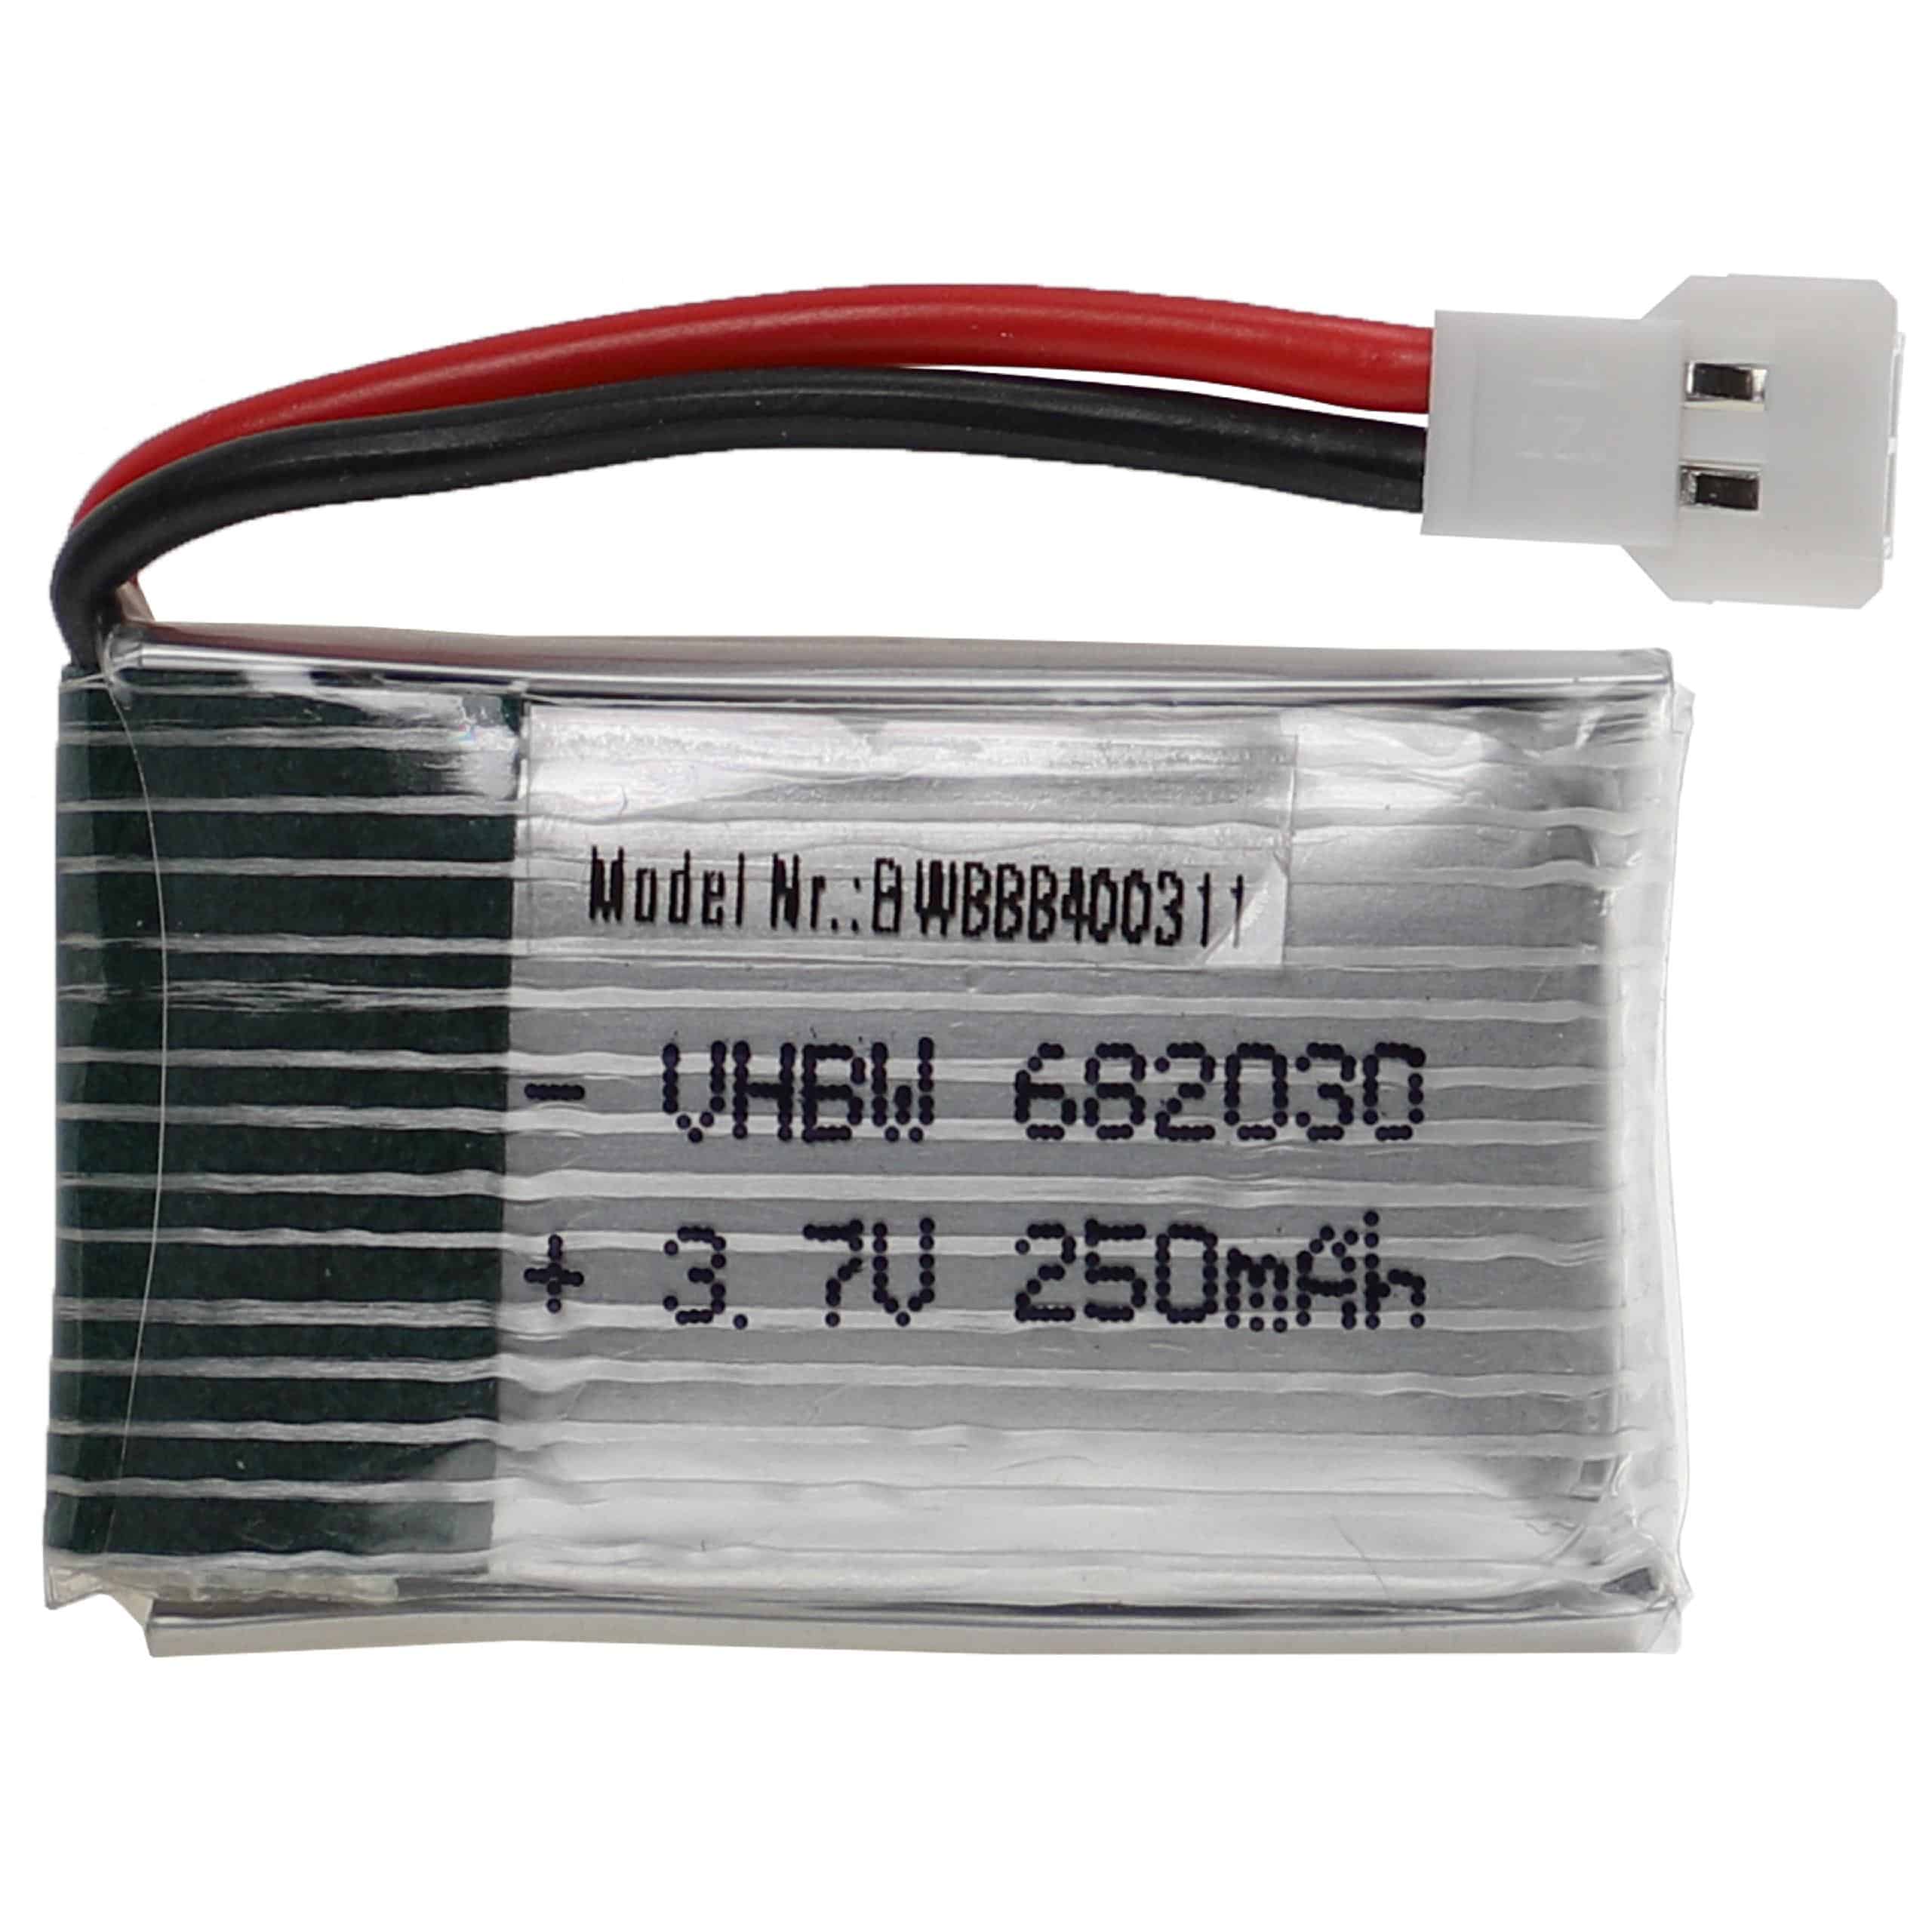 Batería para dispositivos modelismo - 250 mAh 3,7 V Li-poli, XH 2.54 2P